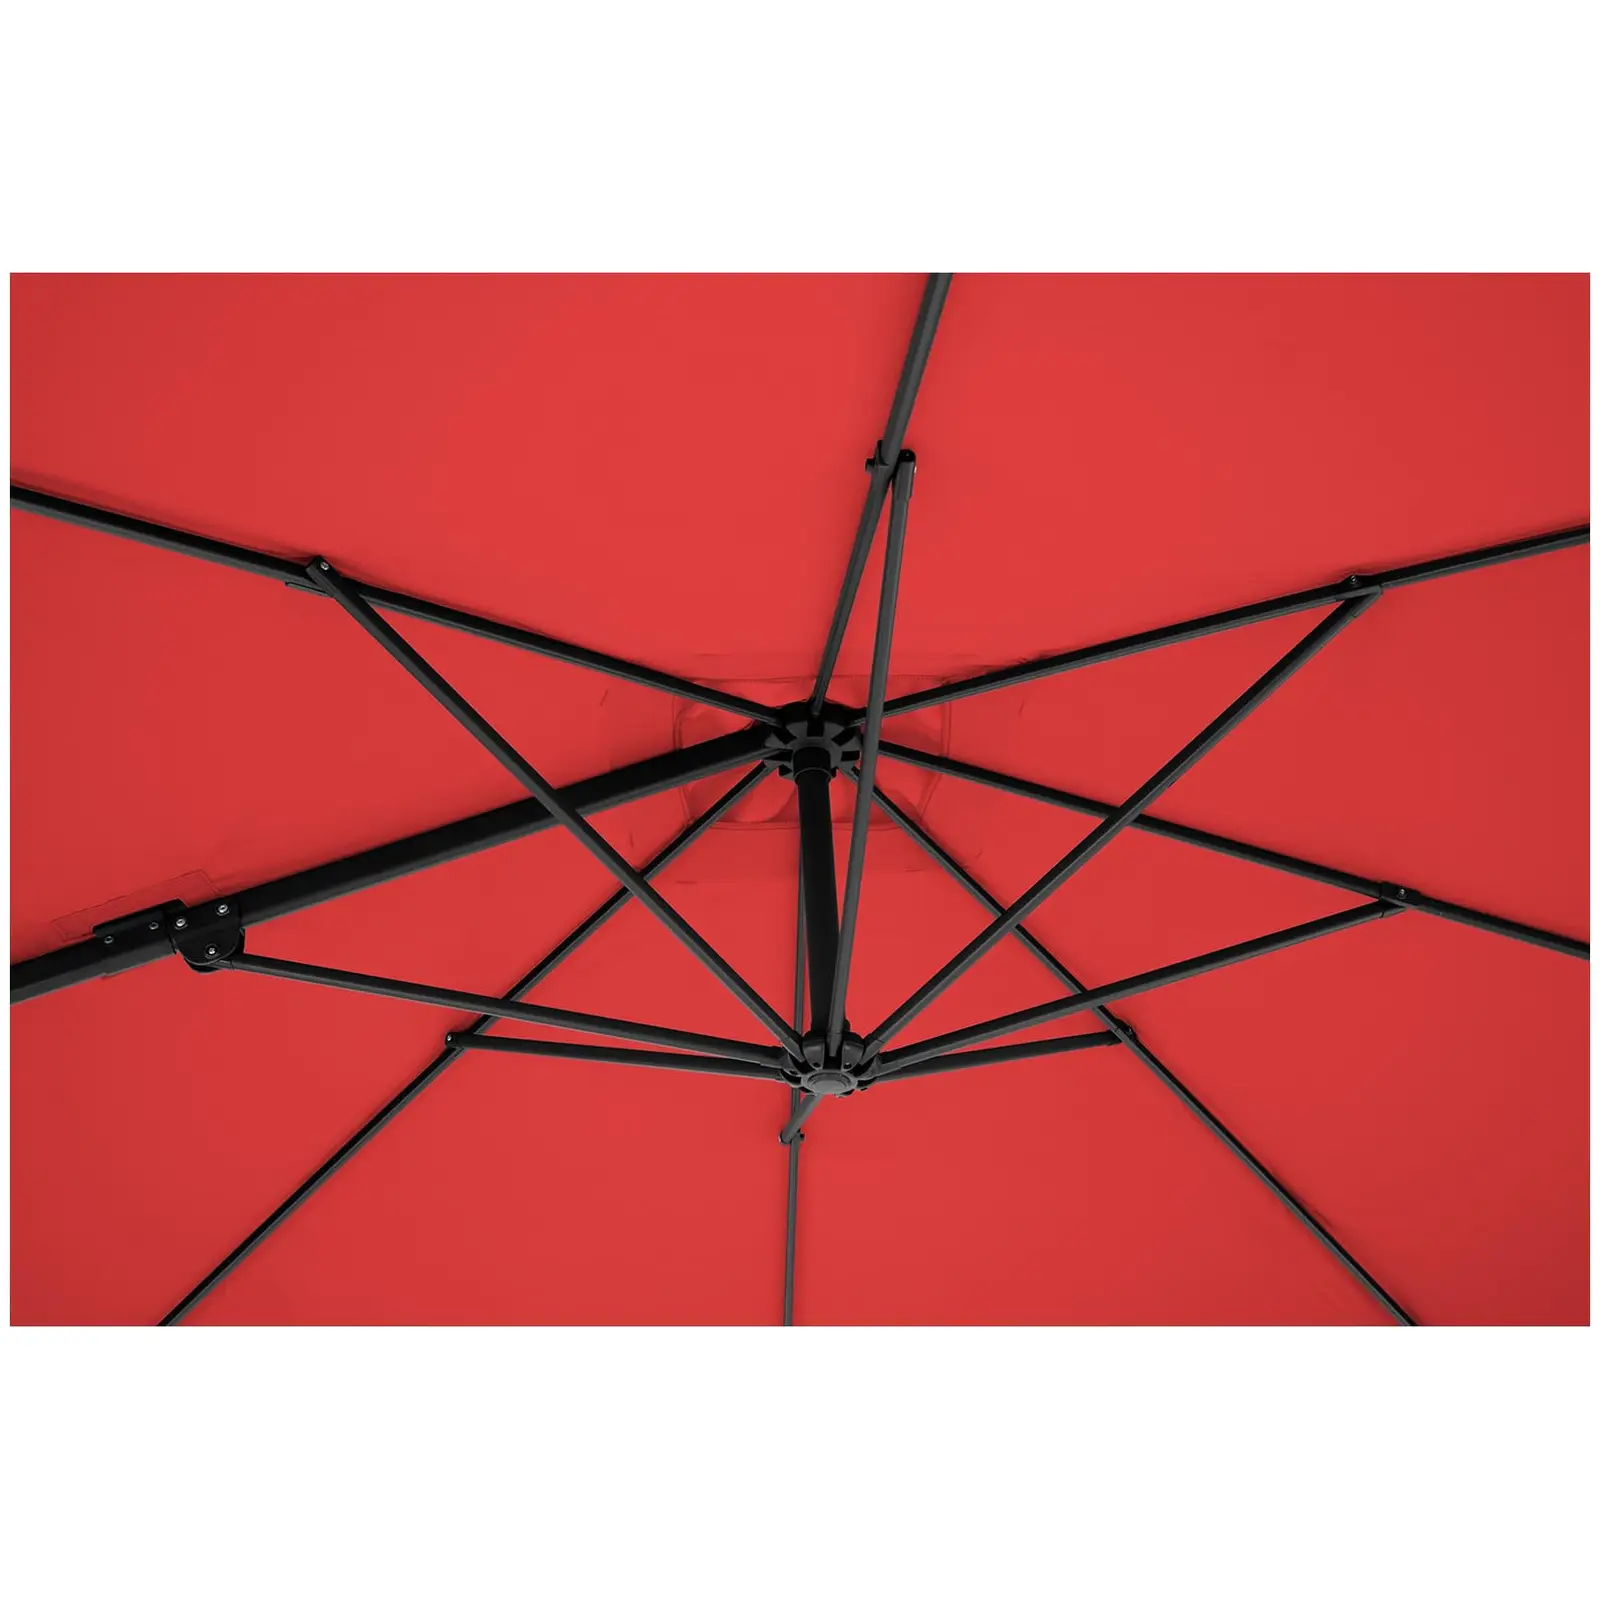 Brugt Hængeparasol - rød - firkantet - 250 cm i diameter - drejelig